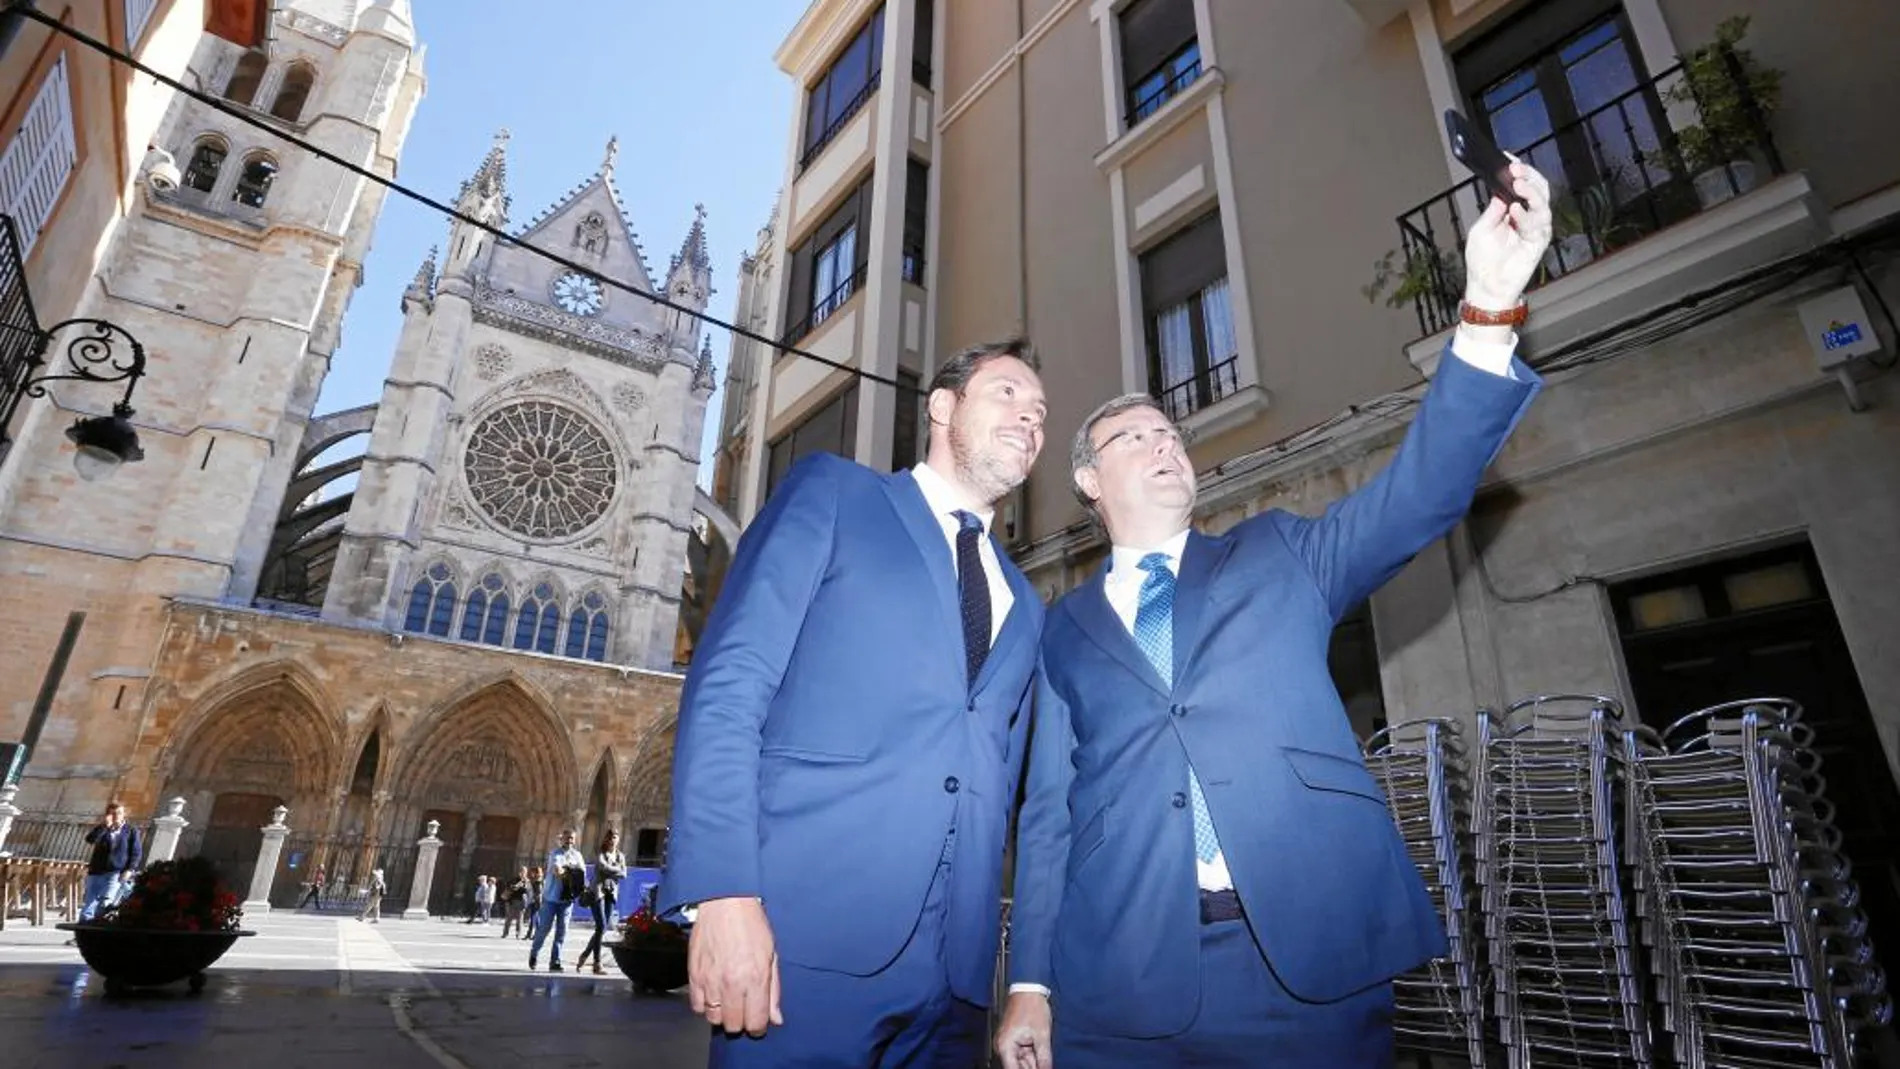 Antonio Silván y Óscar Puente hacen un «selfie» con la catedral de León al fondo